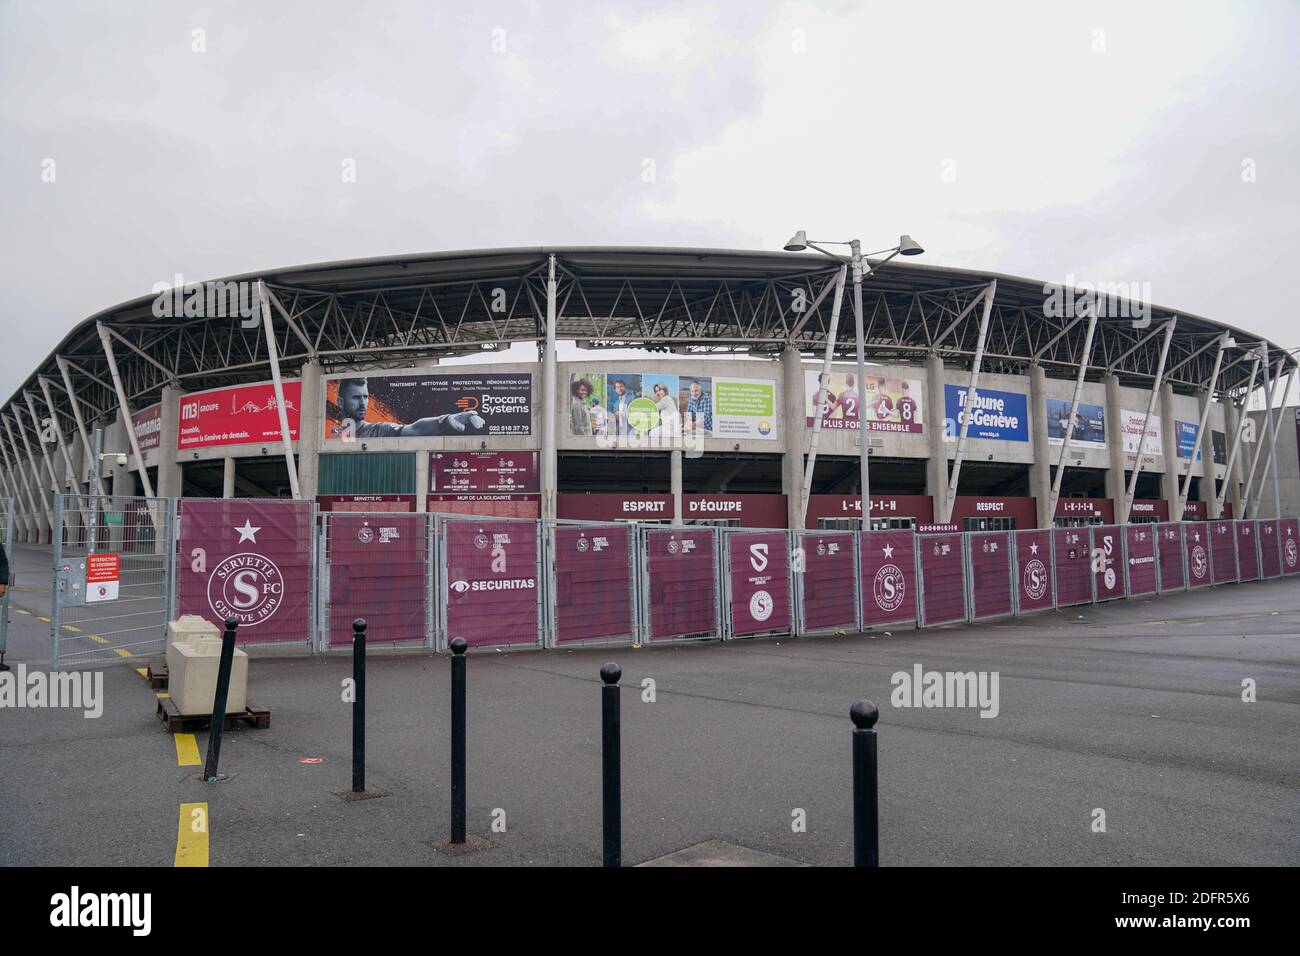 Stade de geneve stadium immagini e fotografie stock ad alta risoluzione -  Alamy